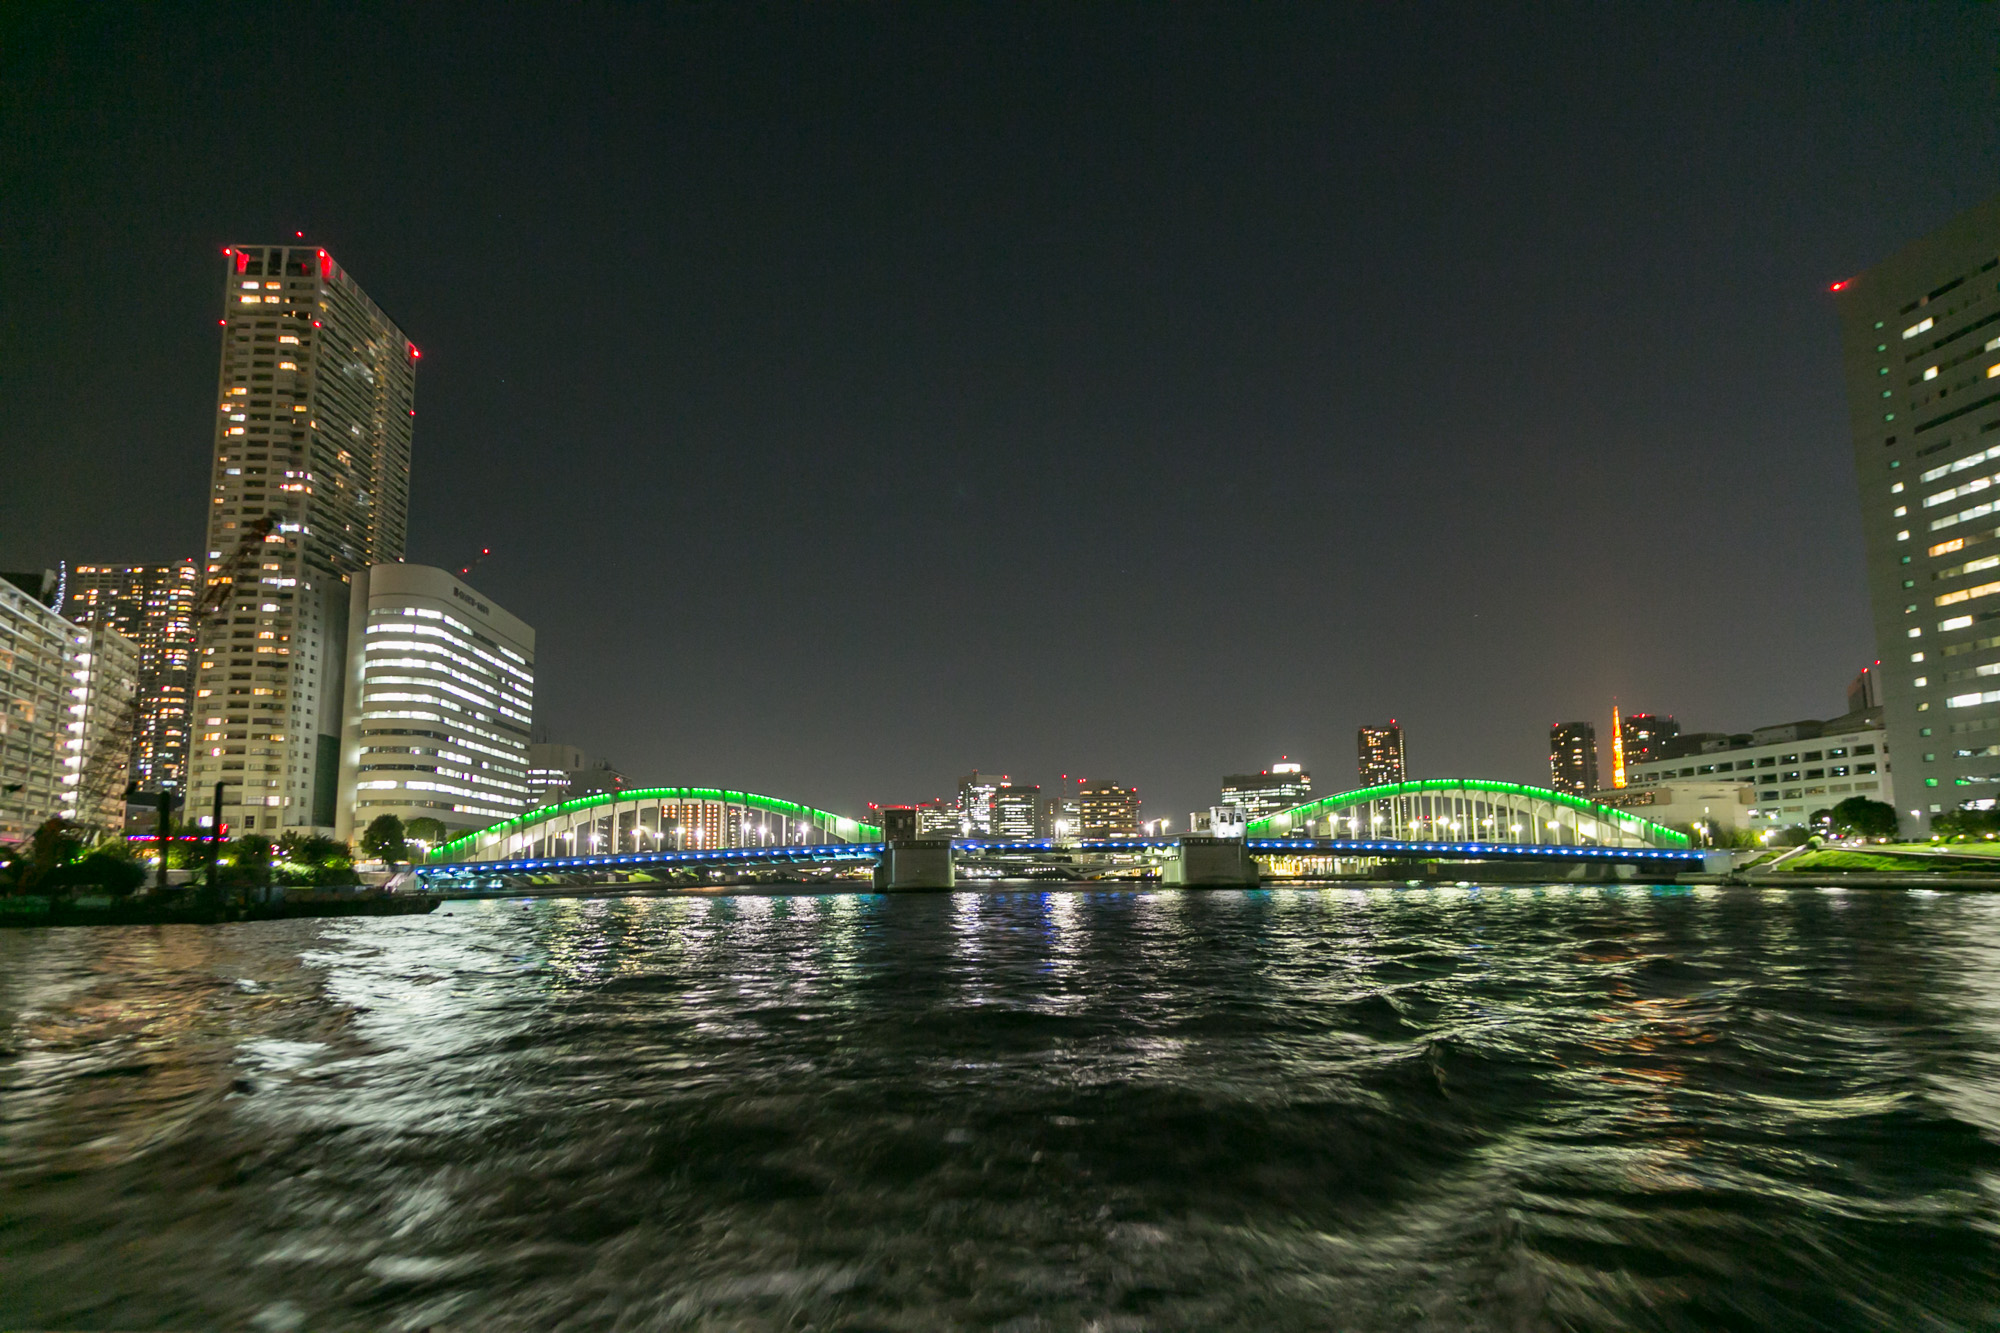 ライトアップされた橋と街の夜景